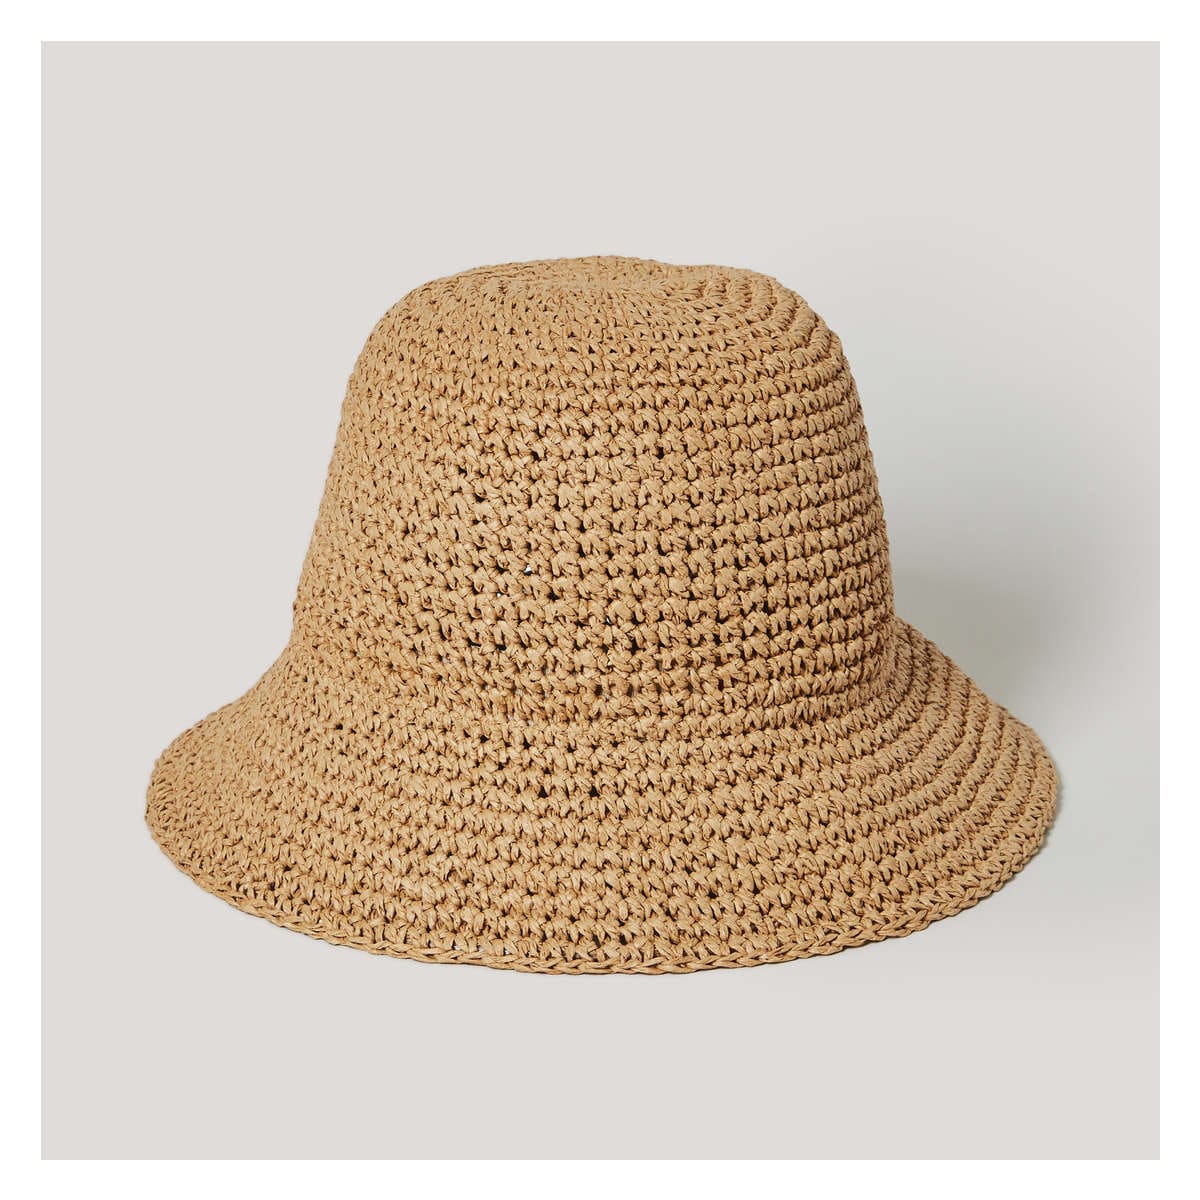 Straw Bucket Hat in Light Brown from Joe Fresh